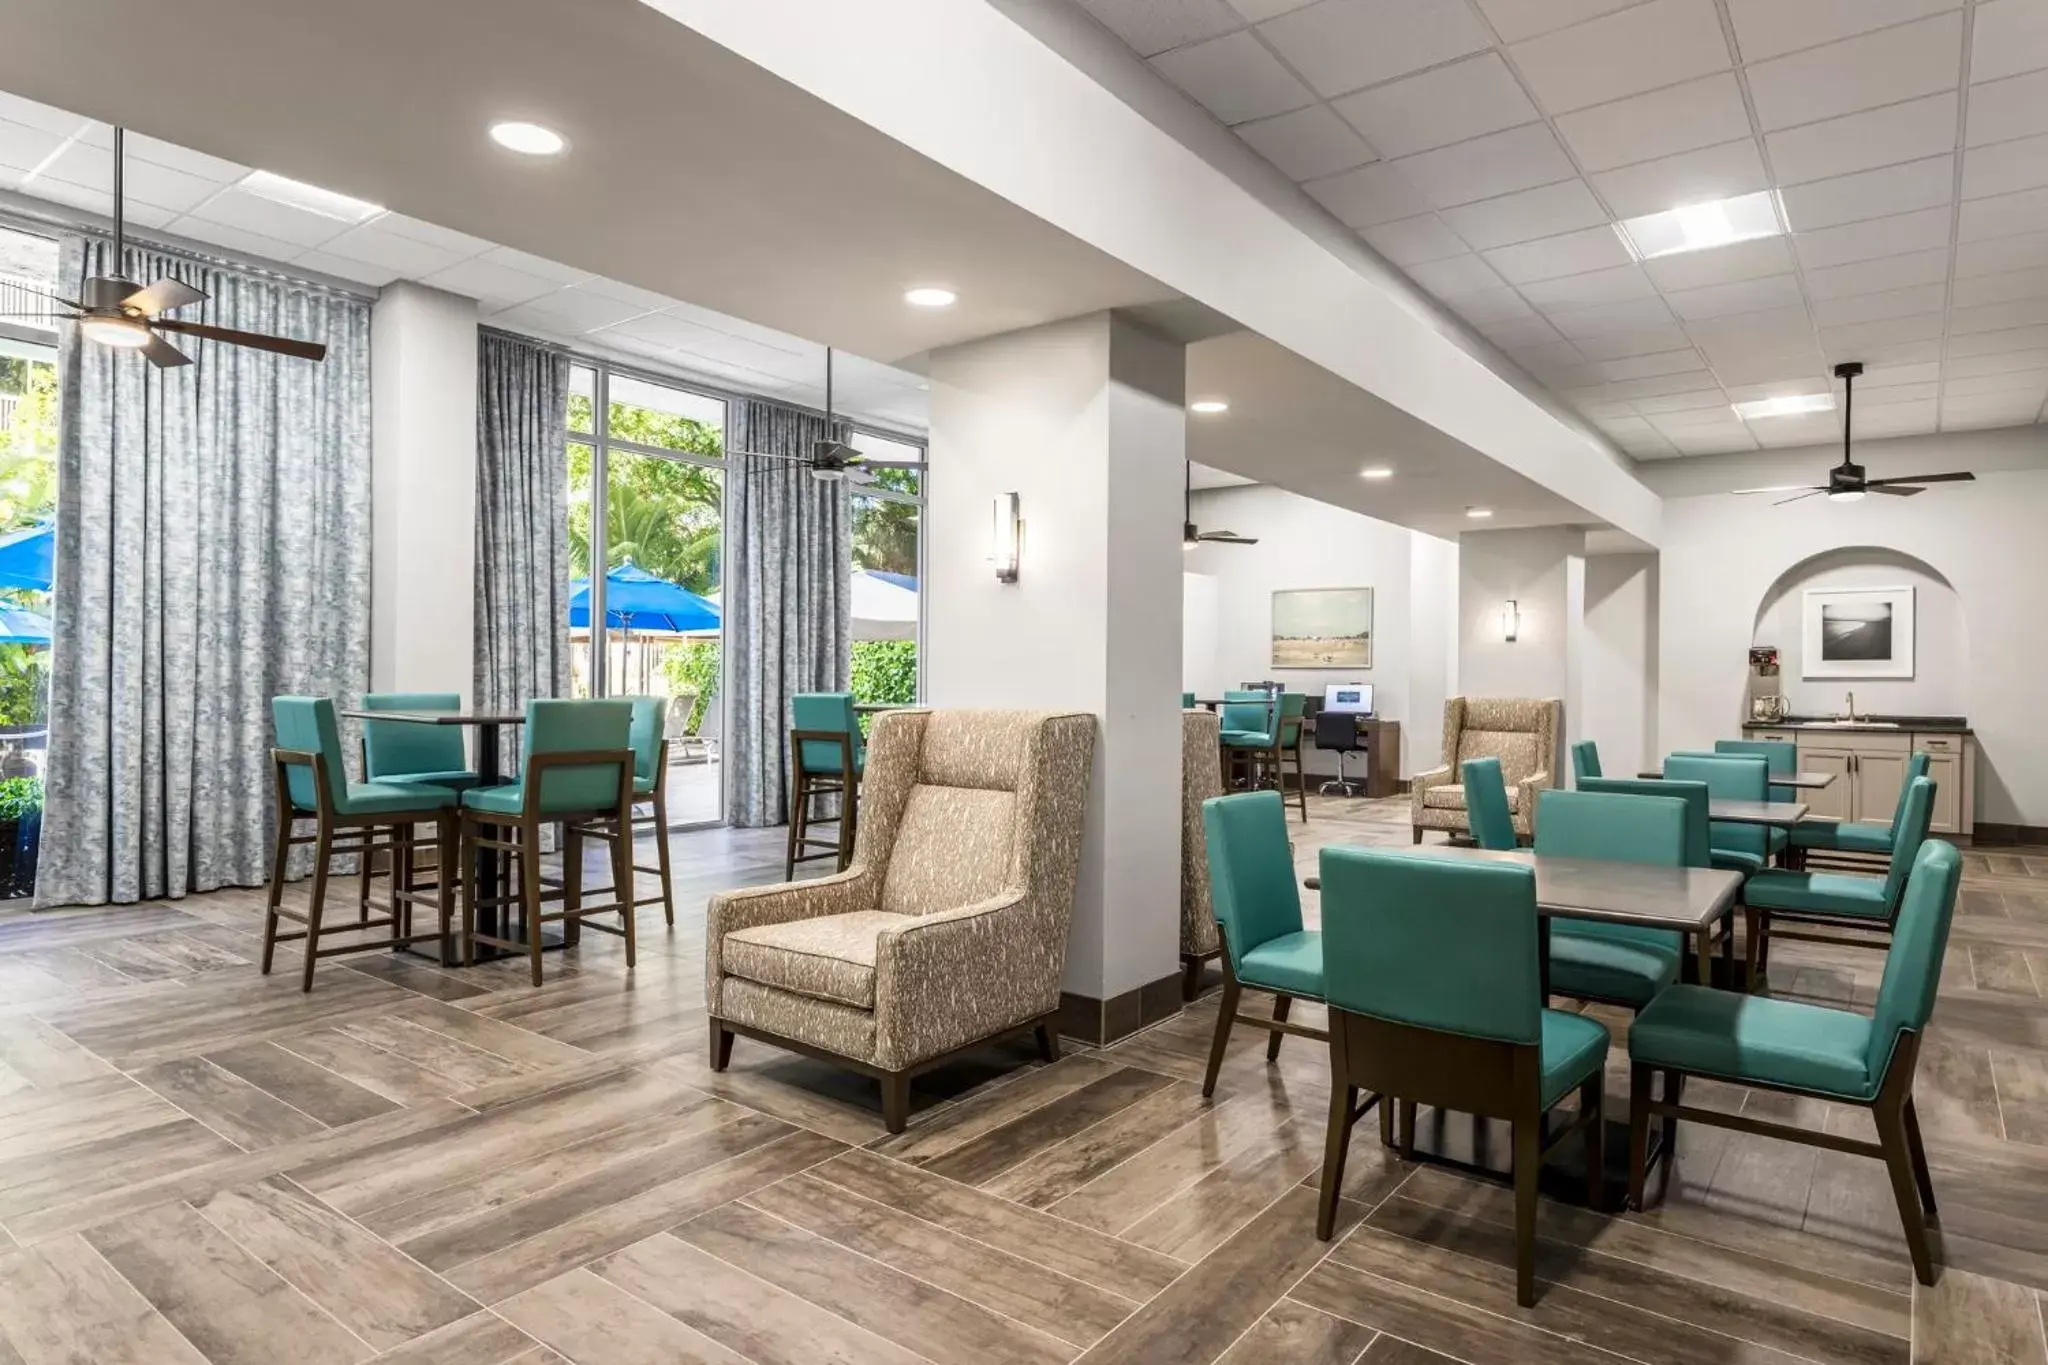 Lobby or reception, Restaurant/Places to Eat in Club Wyndham Santa Barbara